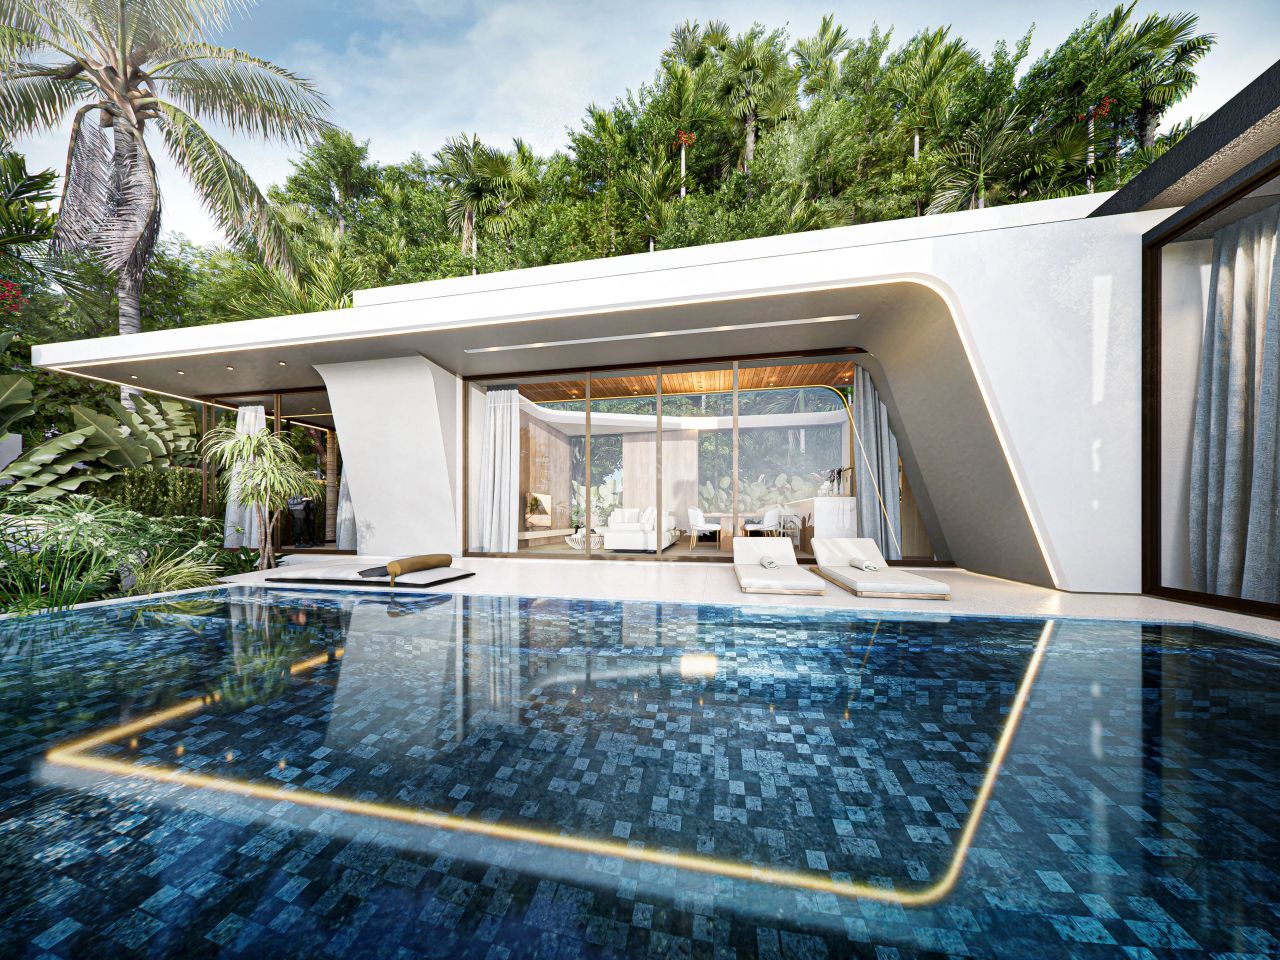 Villa in Insel Phuket, Thailand, 180 m2 - Foto 1